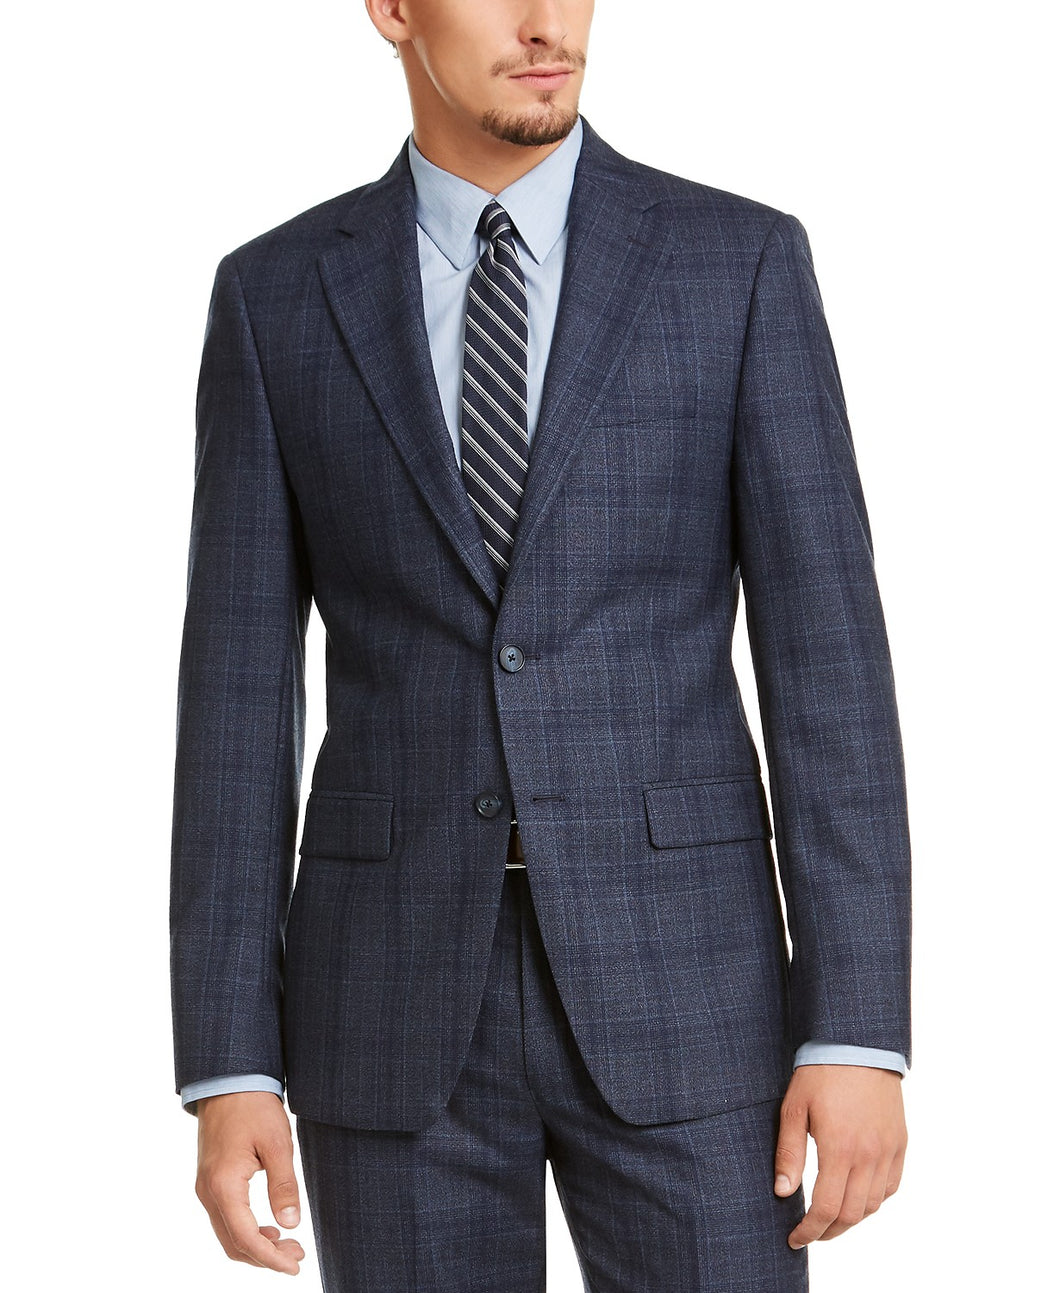 Aanvankelijk betrouwbaarheid herhaling Calvin Klein Men's Slim-Fit Blue Plaid Suit Jacket – shippin.us